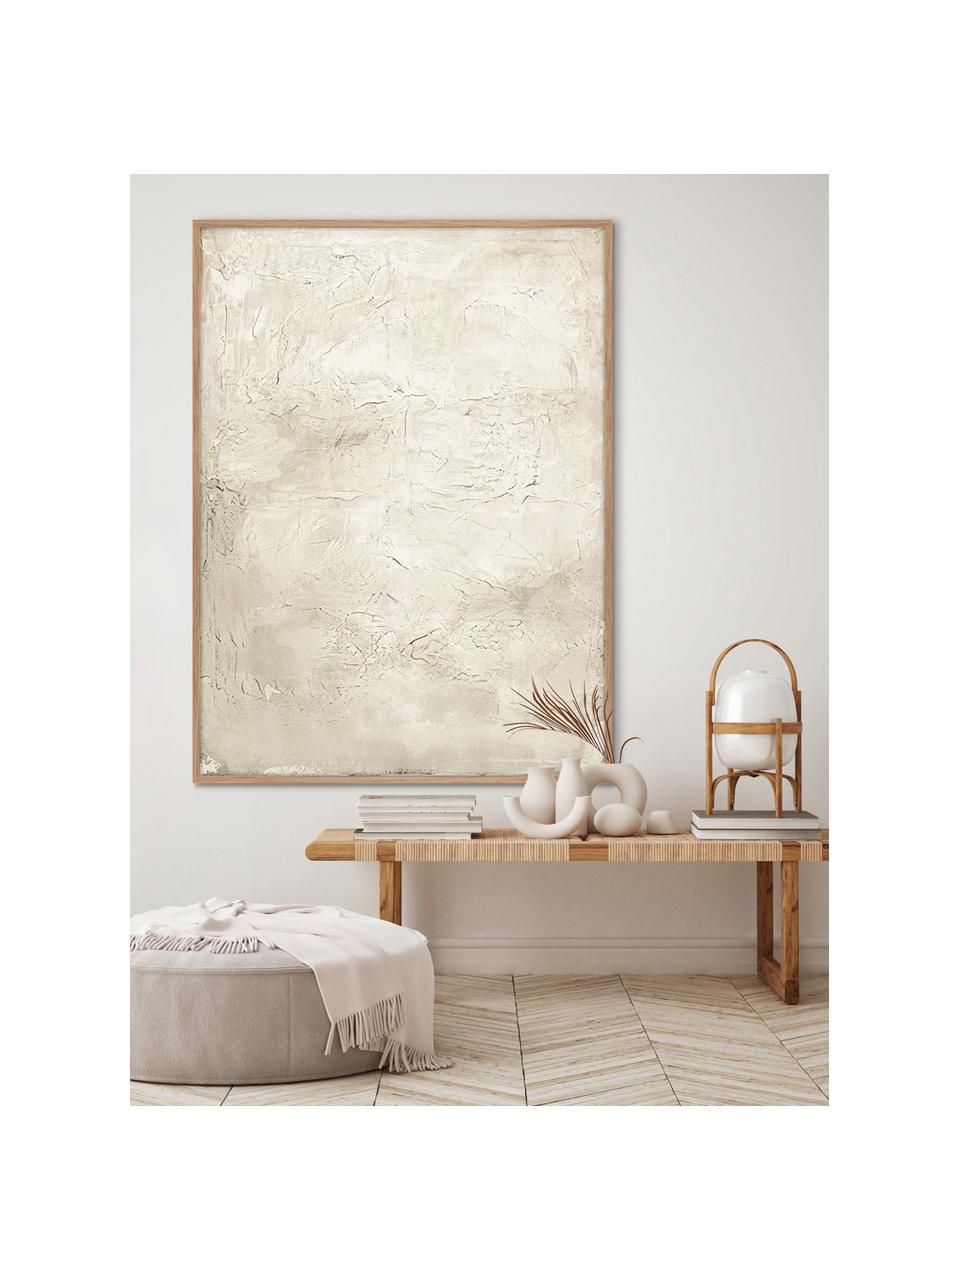 Impression sur toile peinte à la main encadrée Simple Living, Beige, larg. 92 x haut. 120 cm